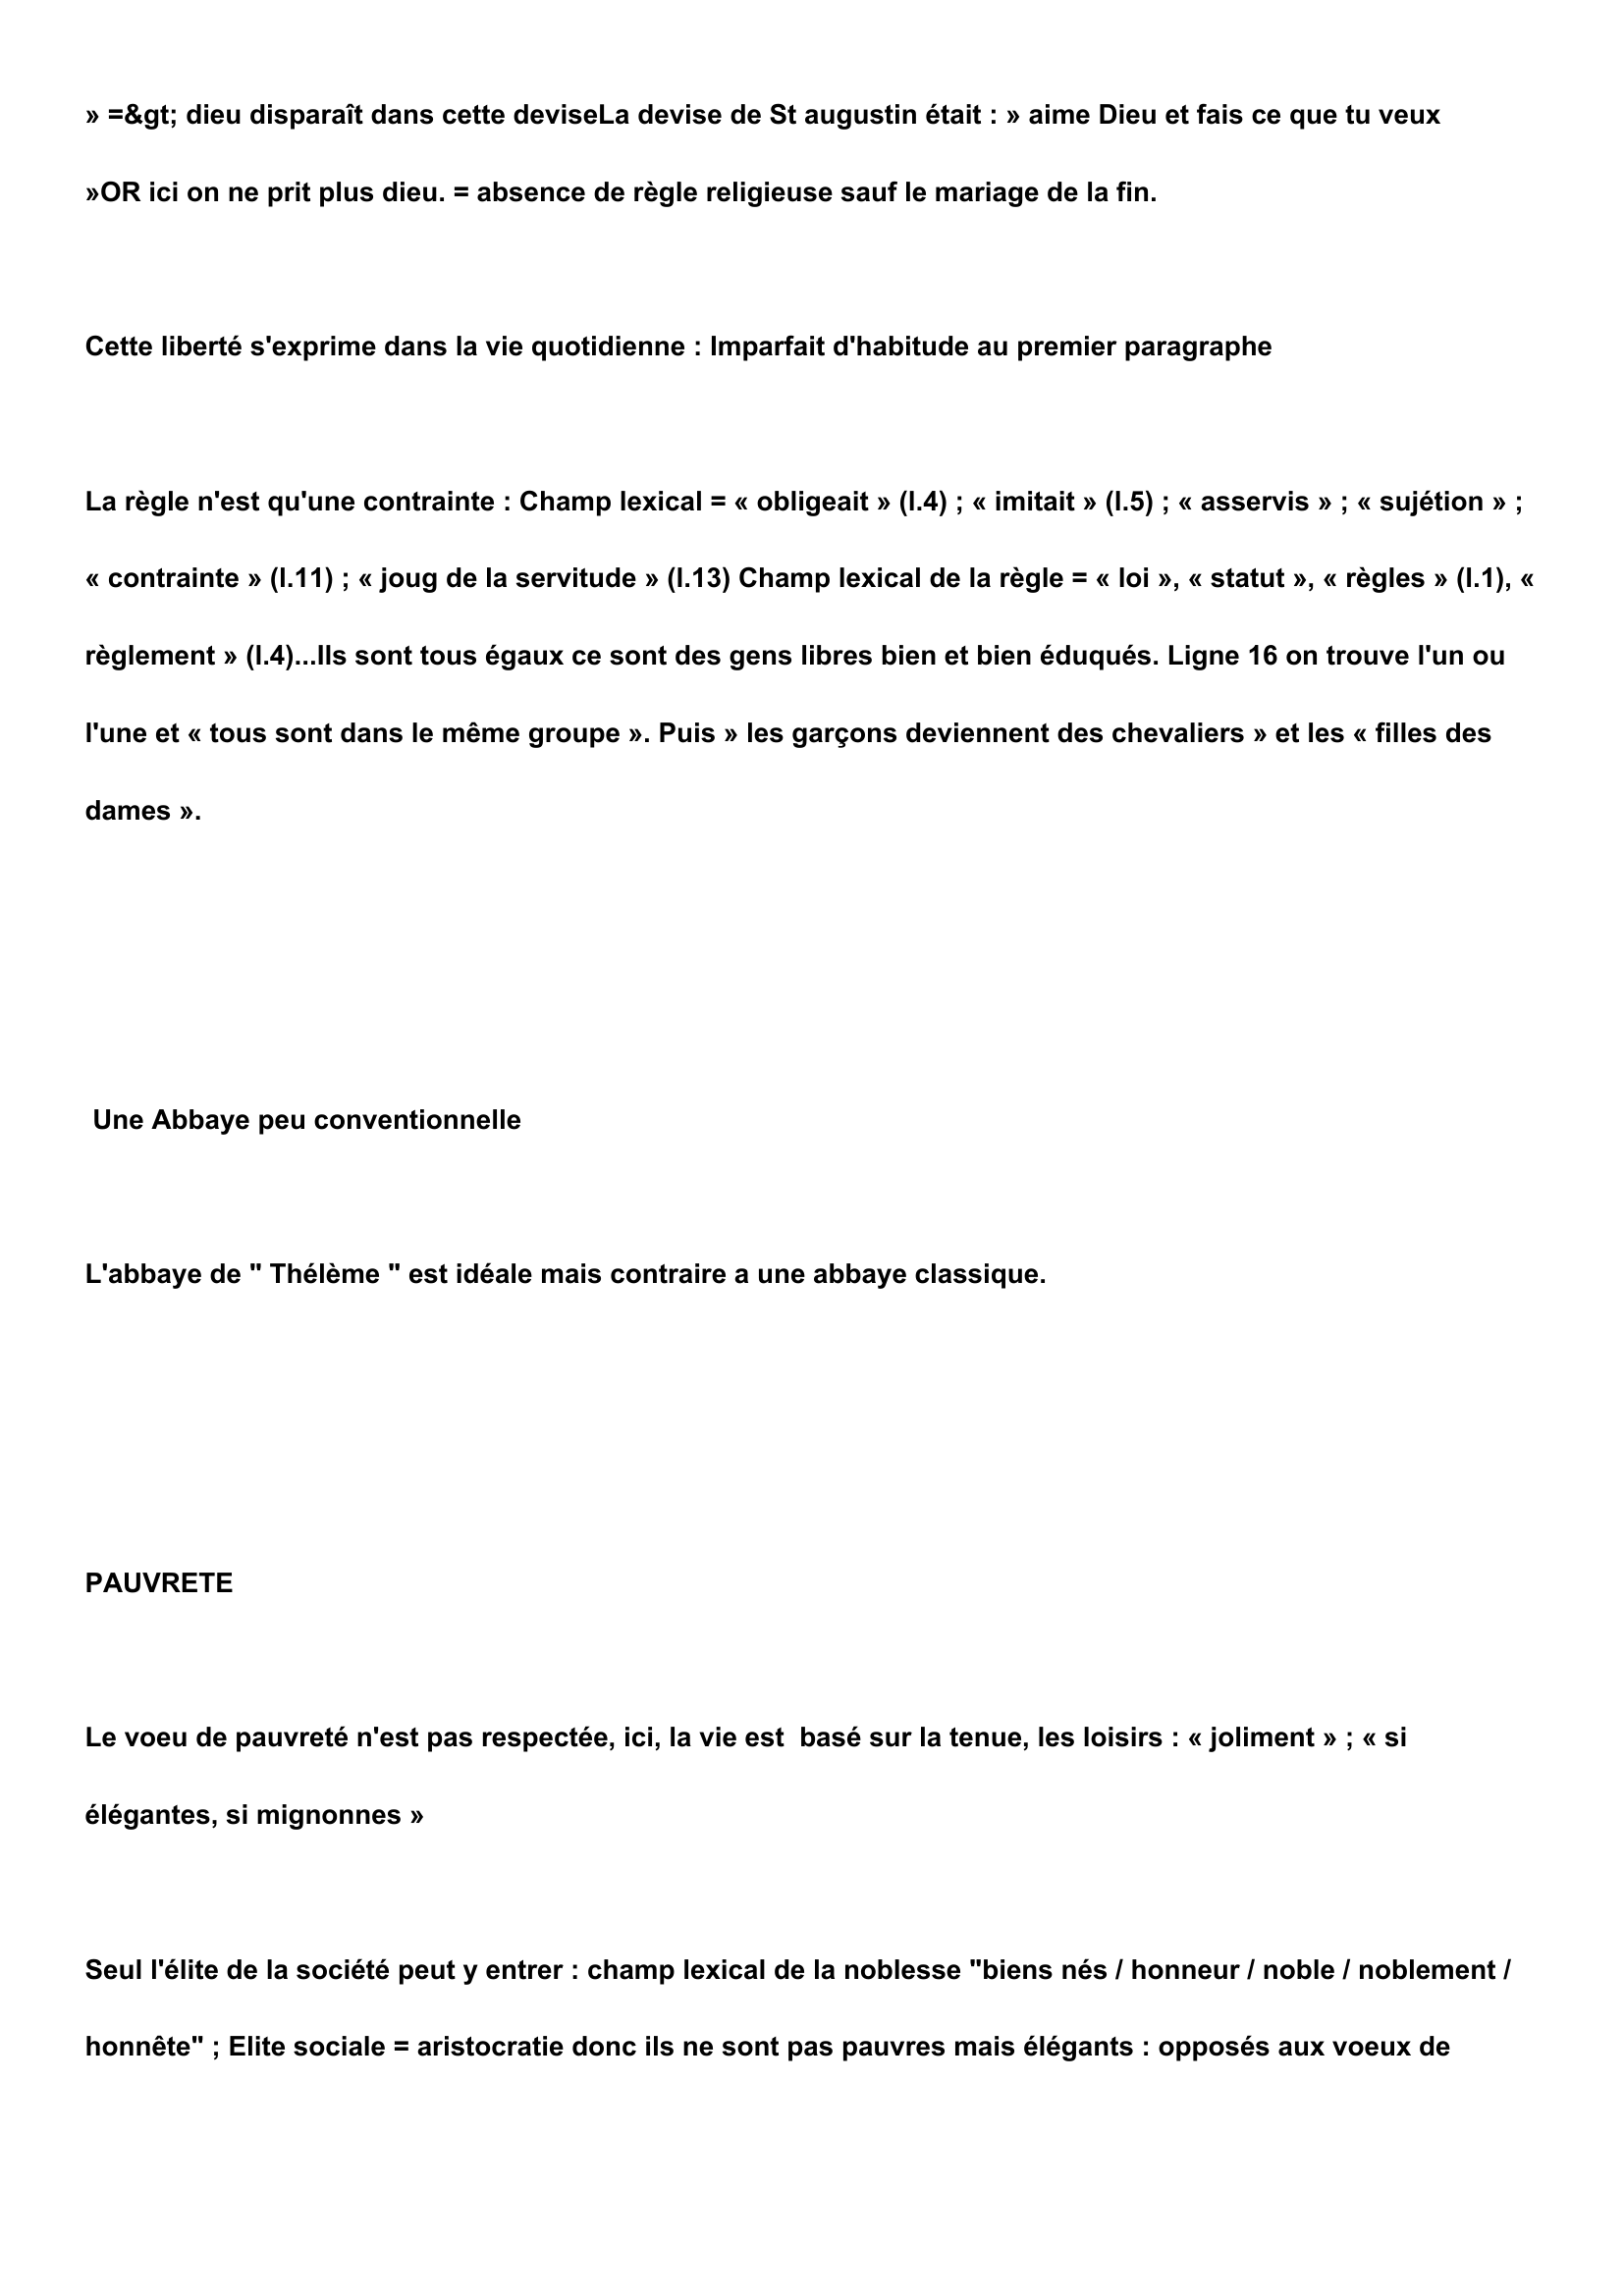 Prévisualisation du document Gargantua, Rabelais - Description de l'Abbaye de Thélème (Commentaire, étude, analyse)